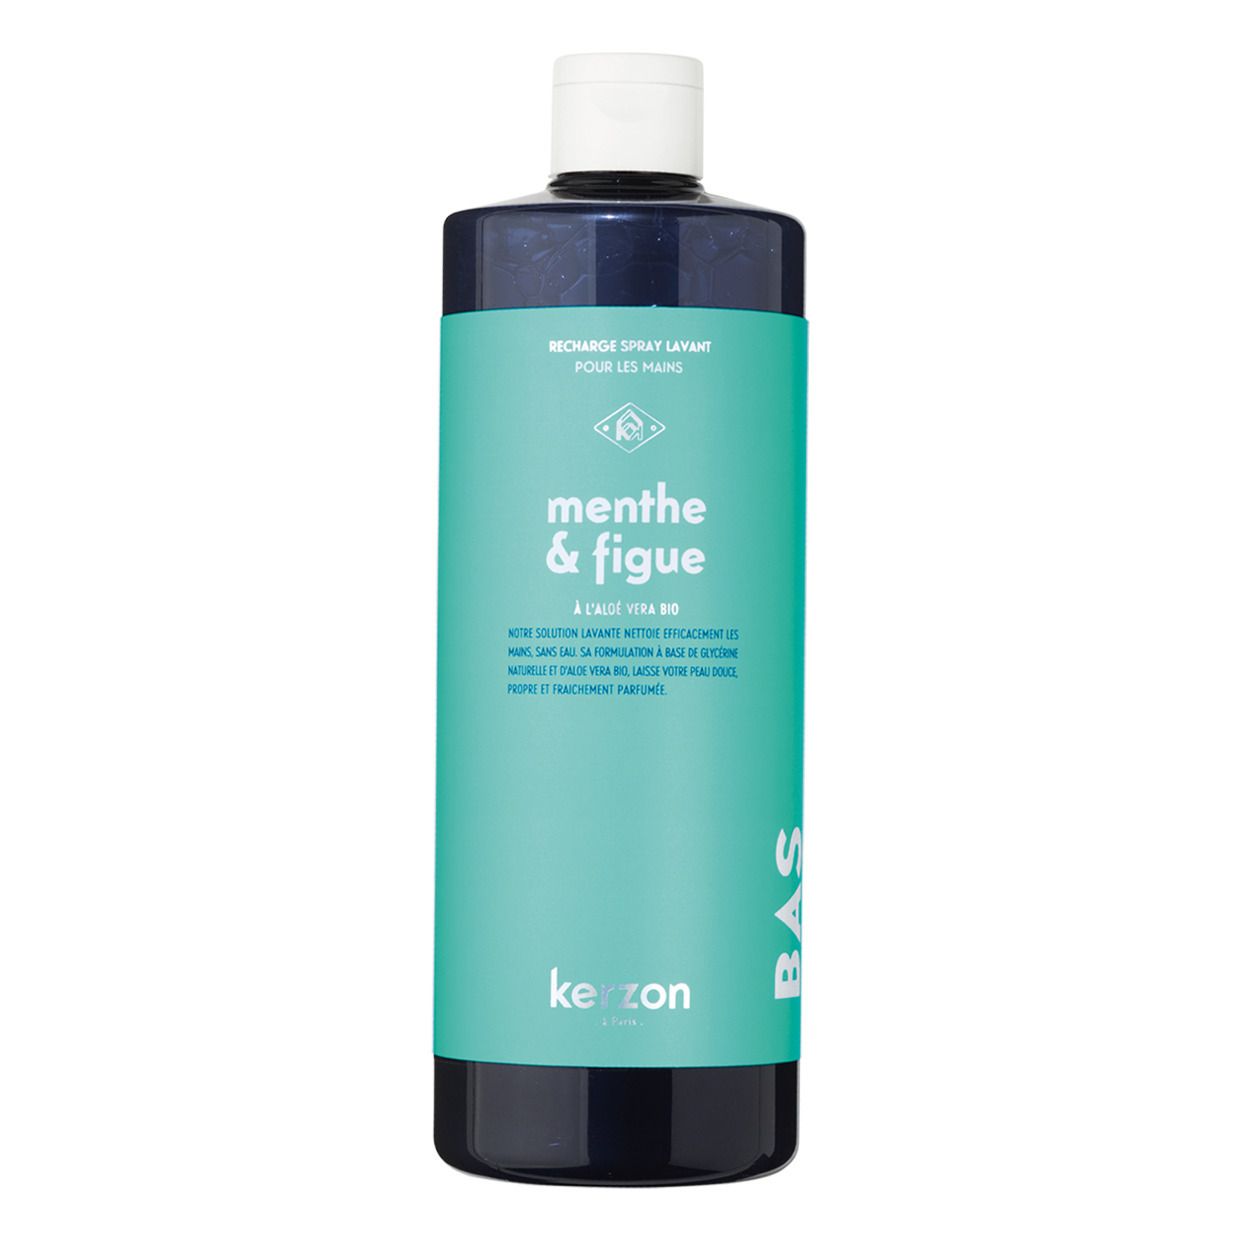 Kerzon - Recharge spray lavant menthe & figue - 500ml - Bleu